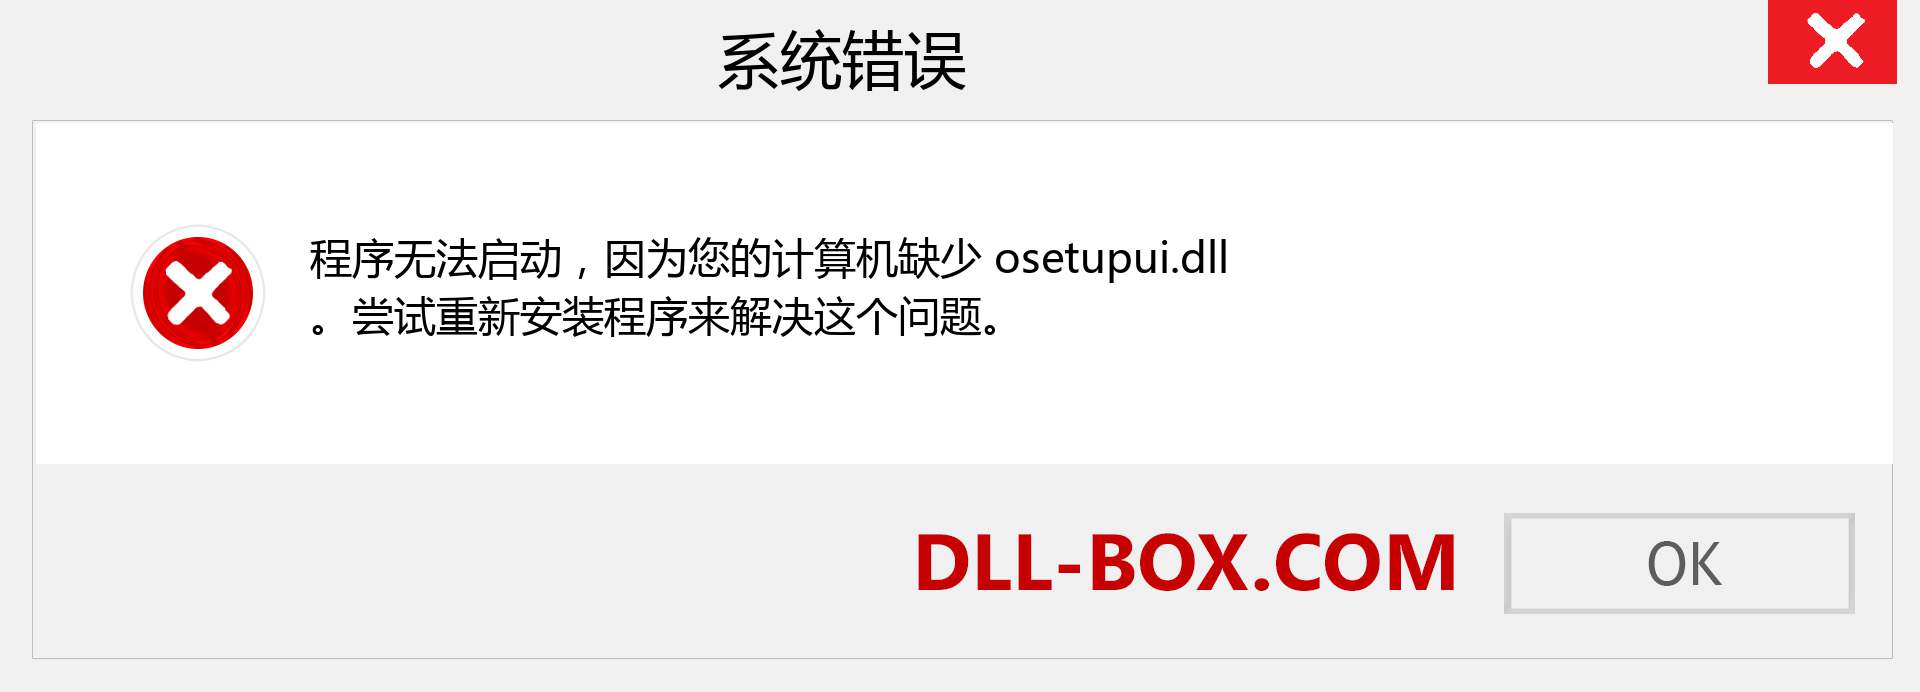 osetupui.dll 文件丢失？。 适用于 Windows 7、8、10 的下载 - 修复 Windows、照片、图像上的 osetupui dll 丢失错误